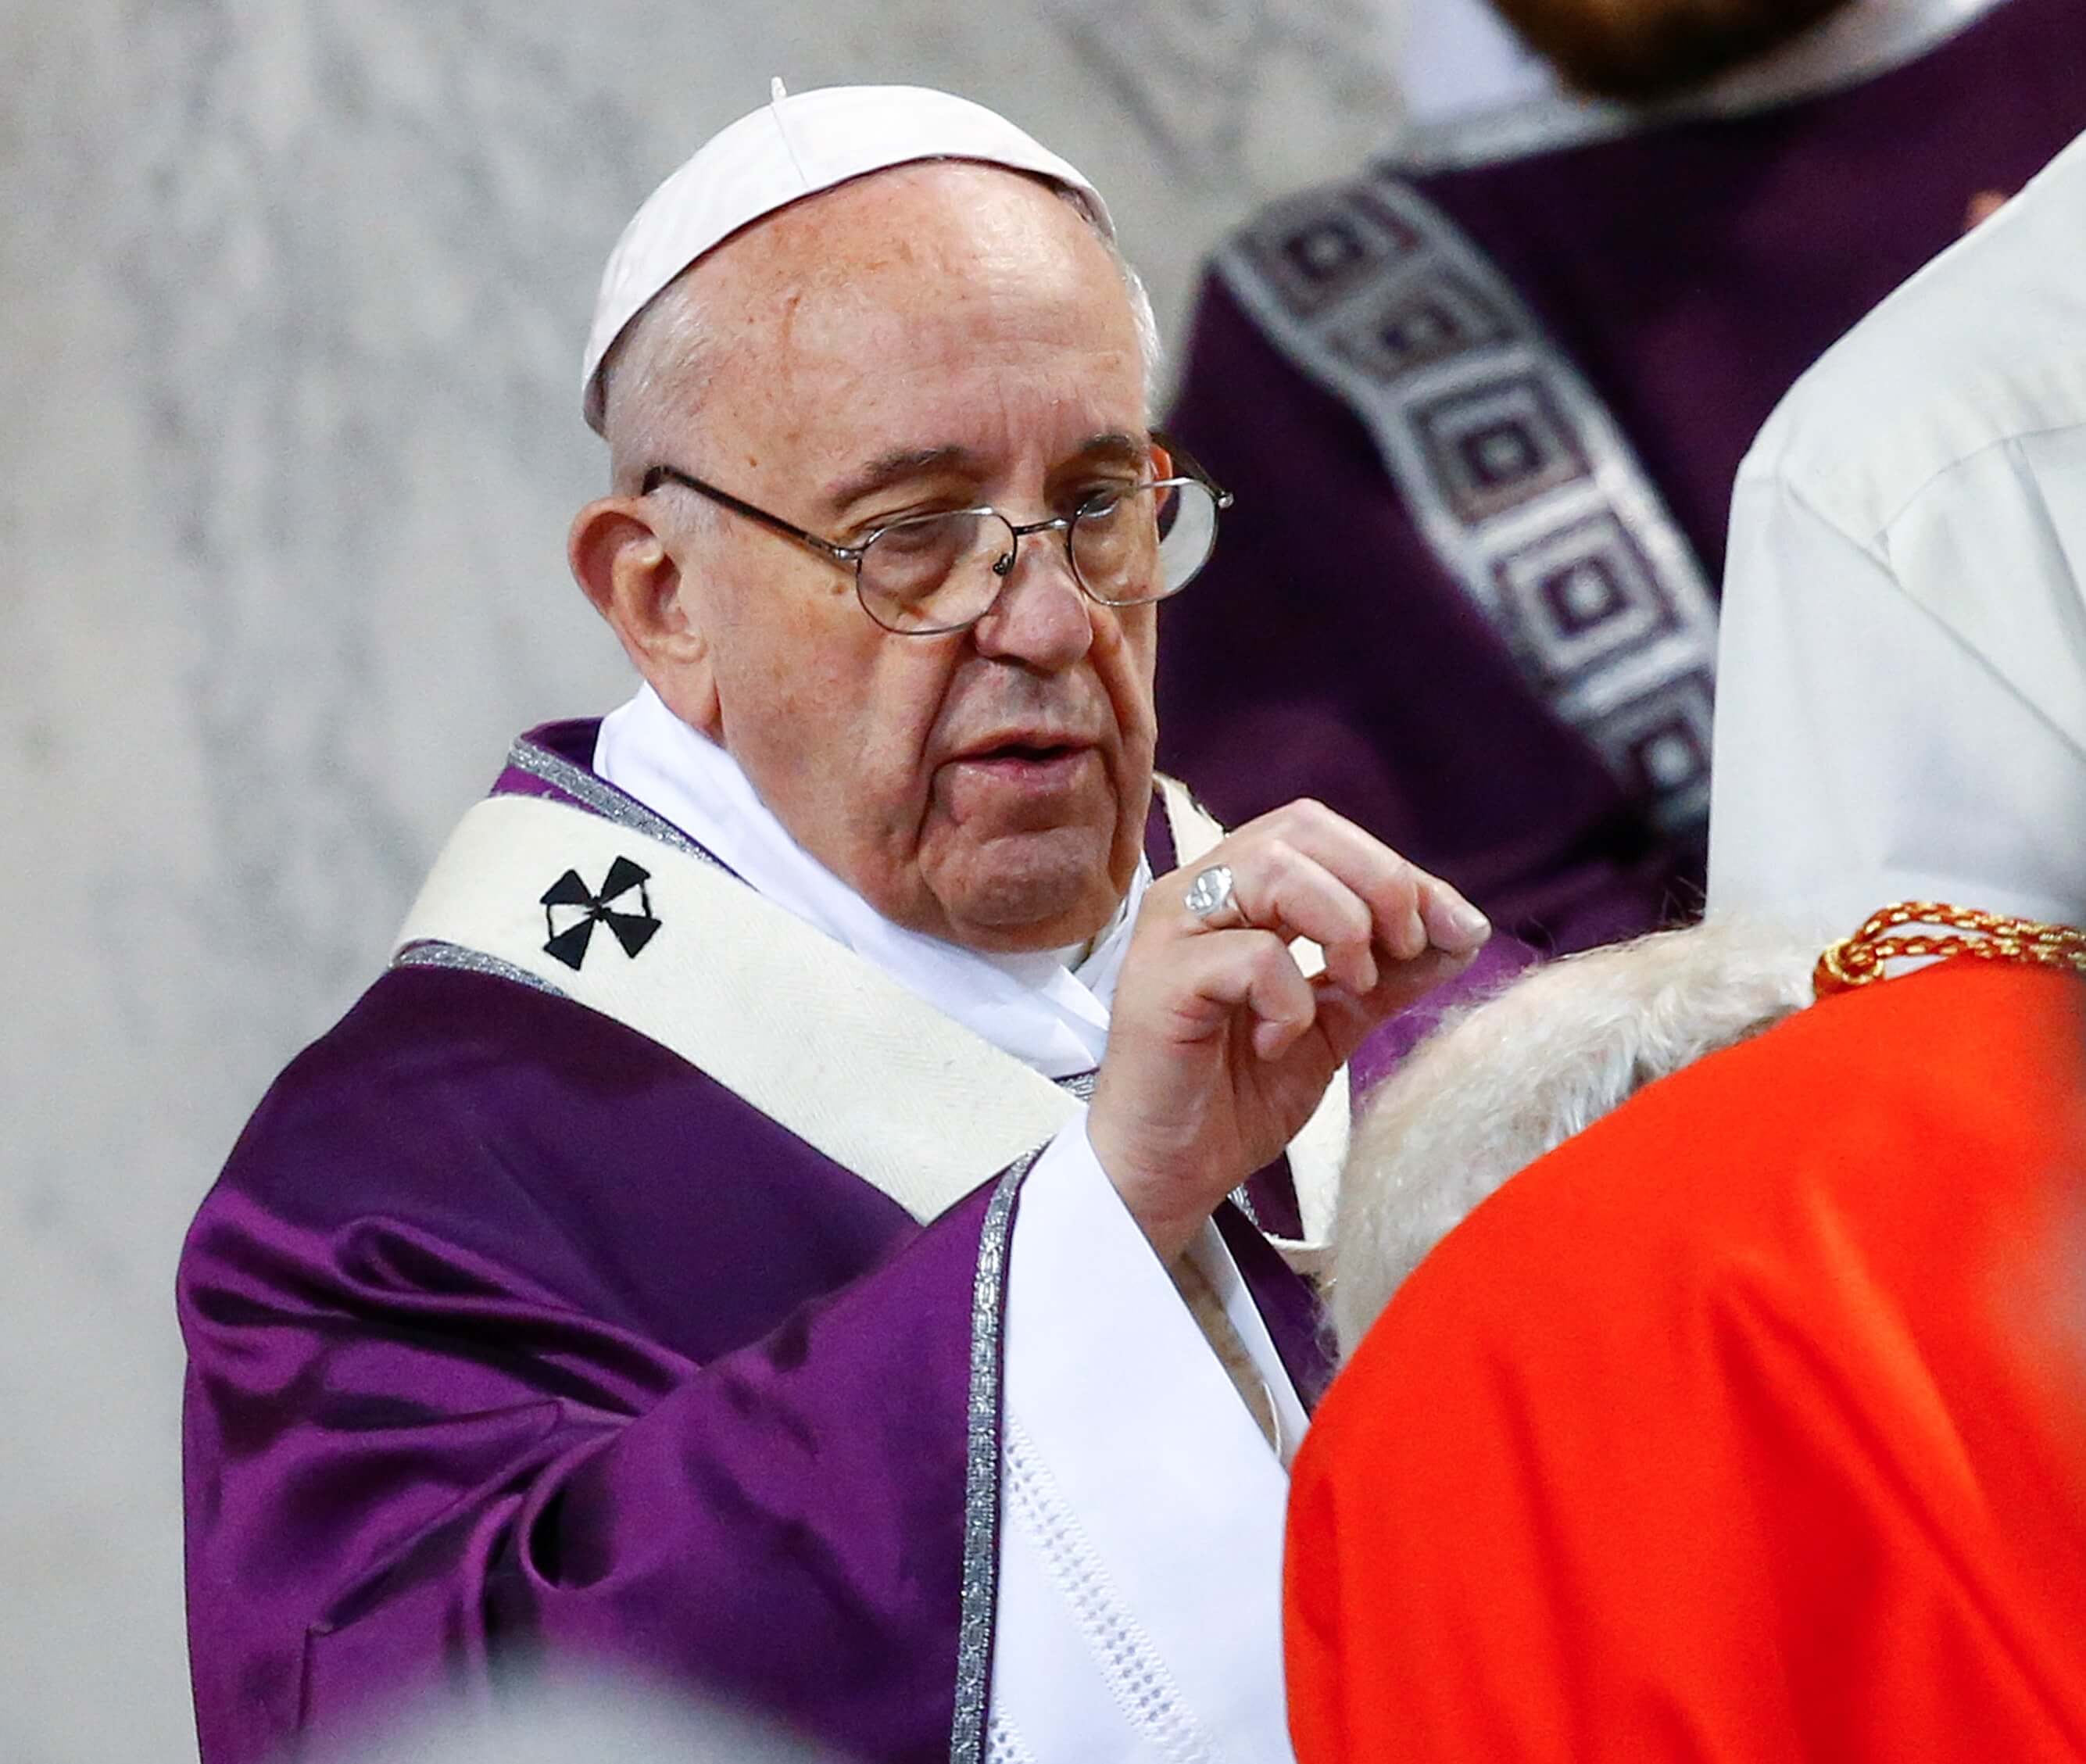 El papa Francisco pone la cruz de ceniza en la cabeza de un cardenal durante la misa del Miércoles de Ceniza en la basílica de Santa Sabina, en Roma, Italia..(Reuters)